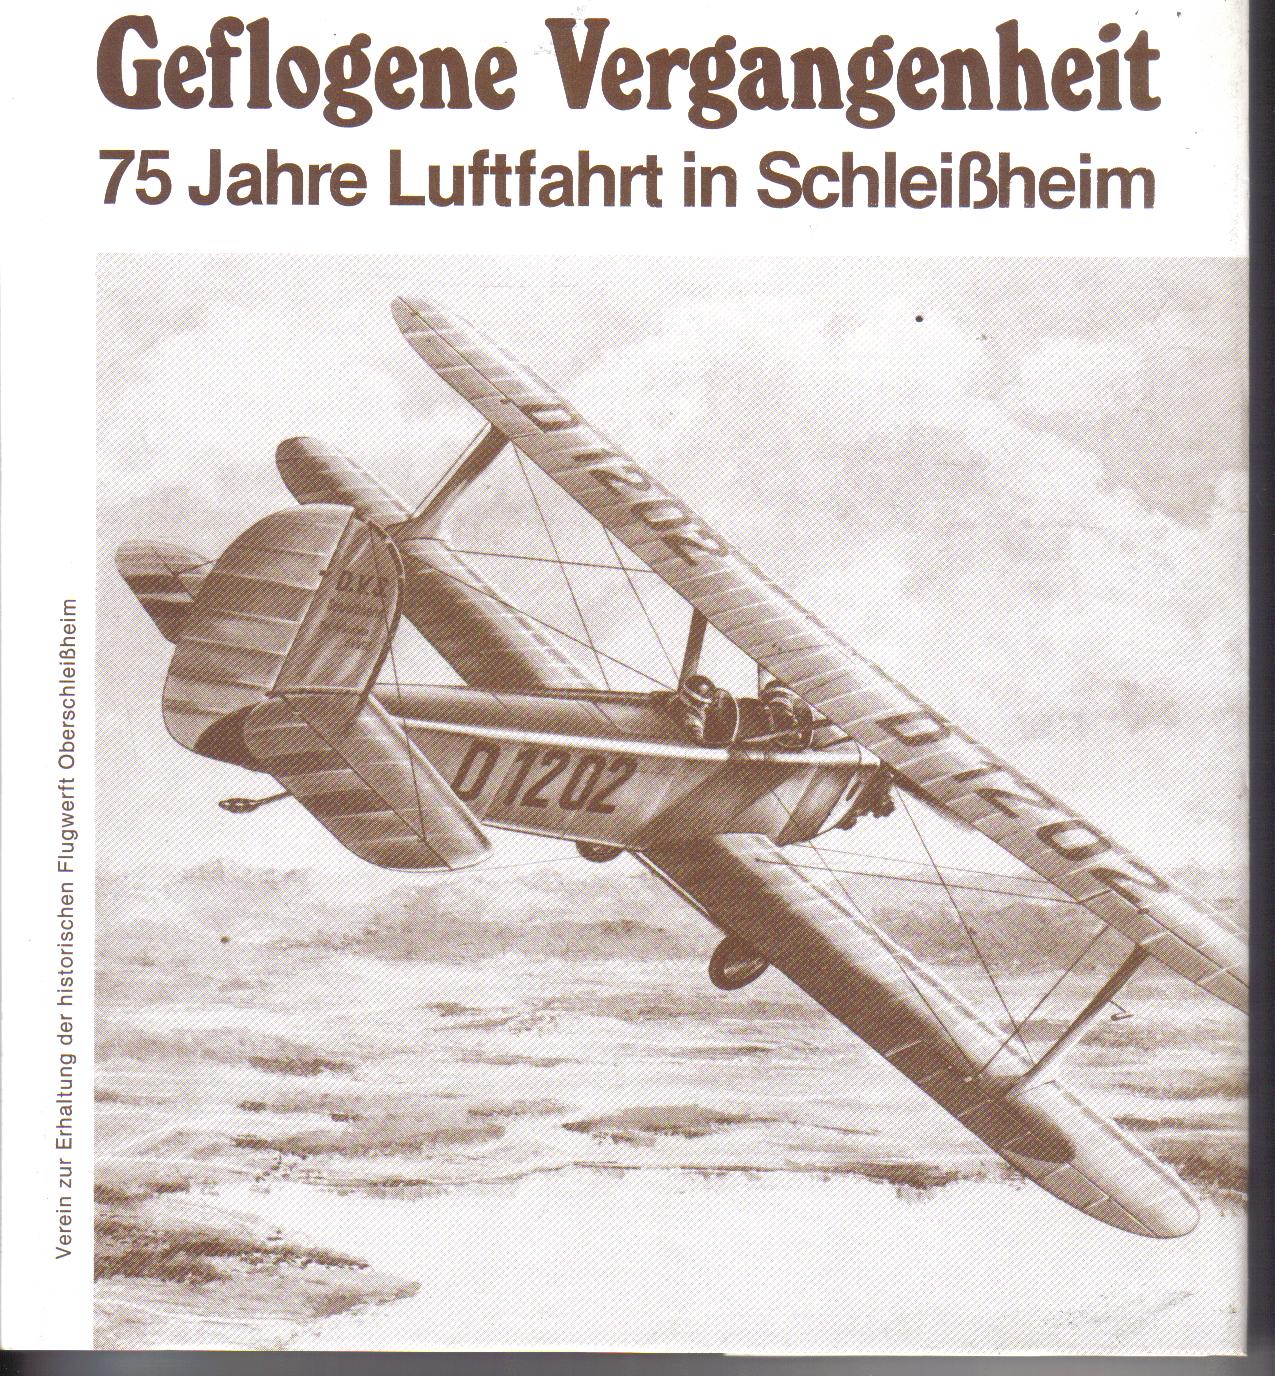 Geflogene Vergangenheit      75 Jahre Luftfahrt in Schleissheim